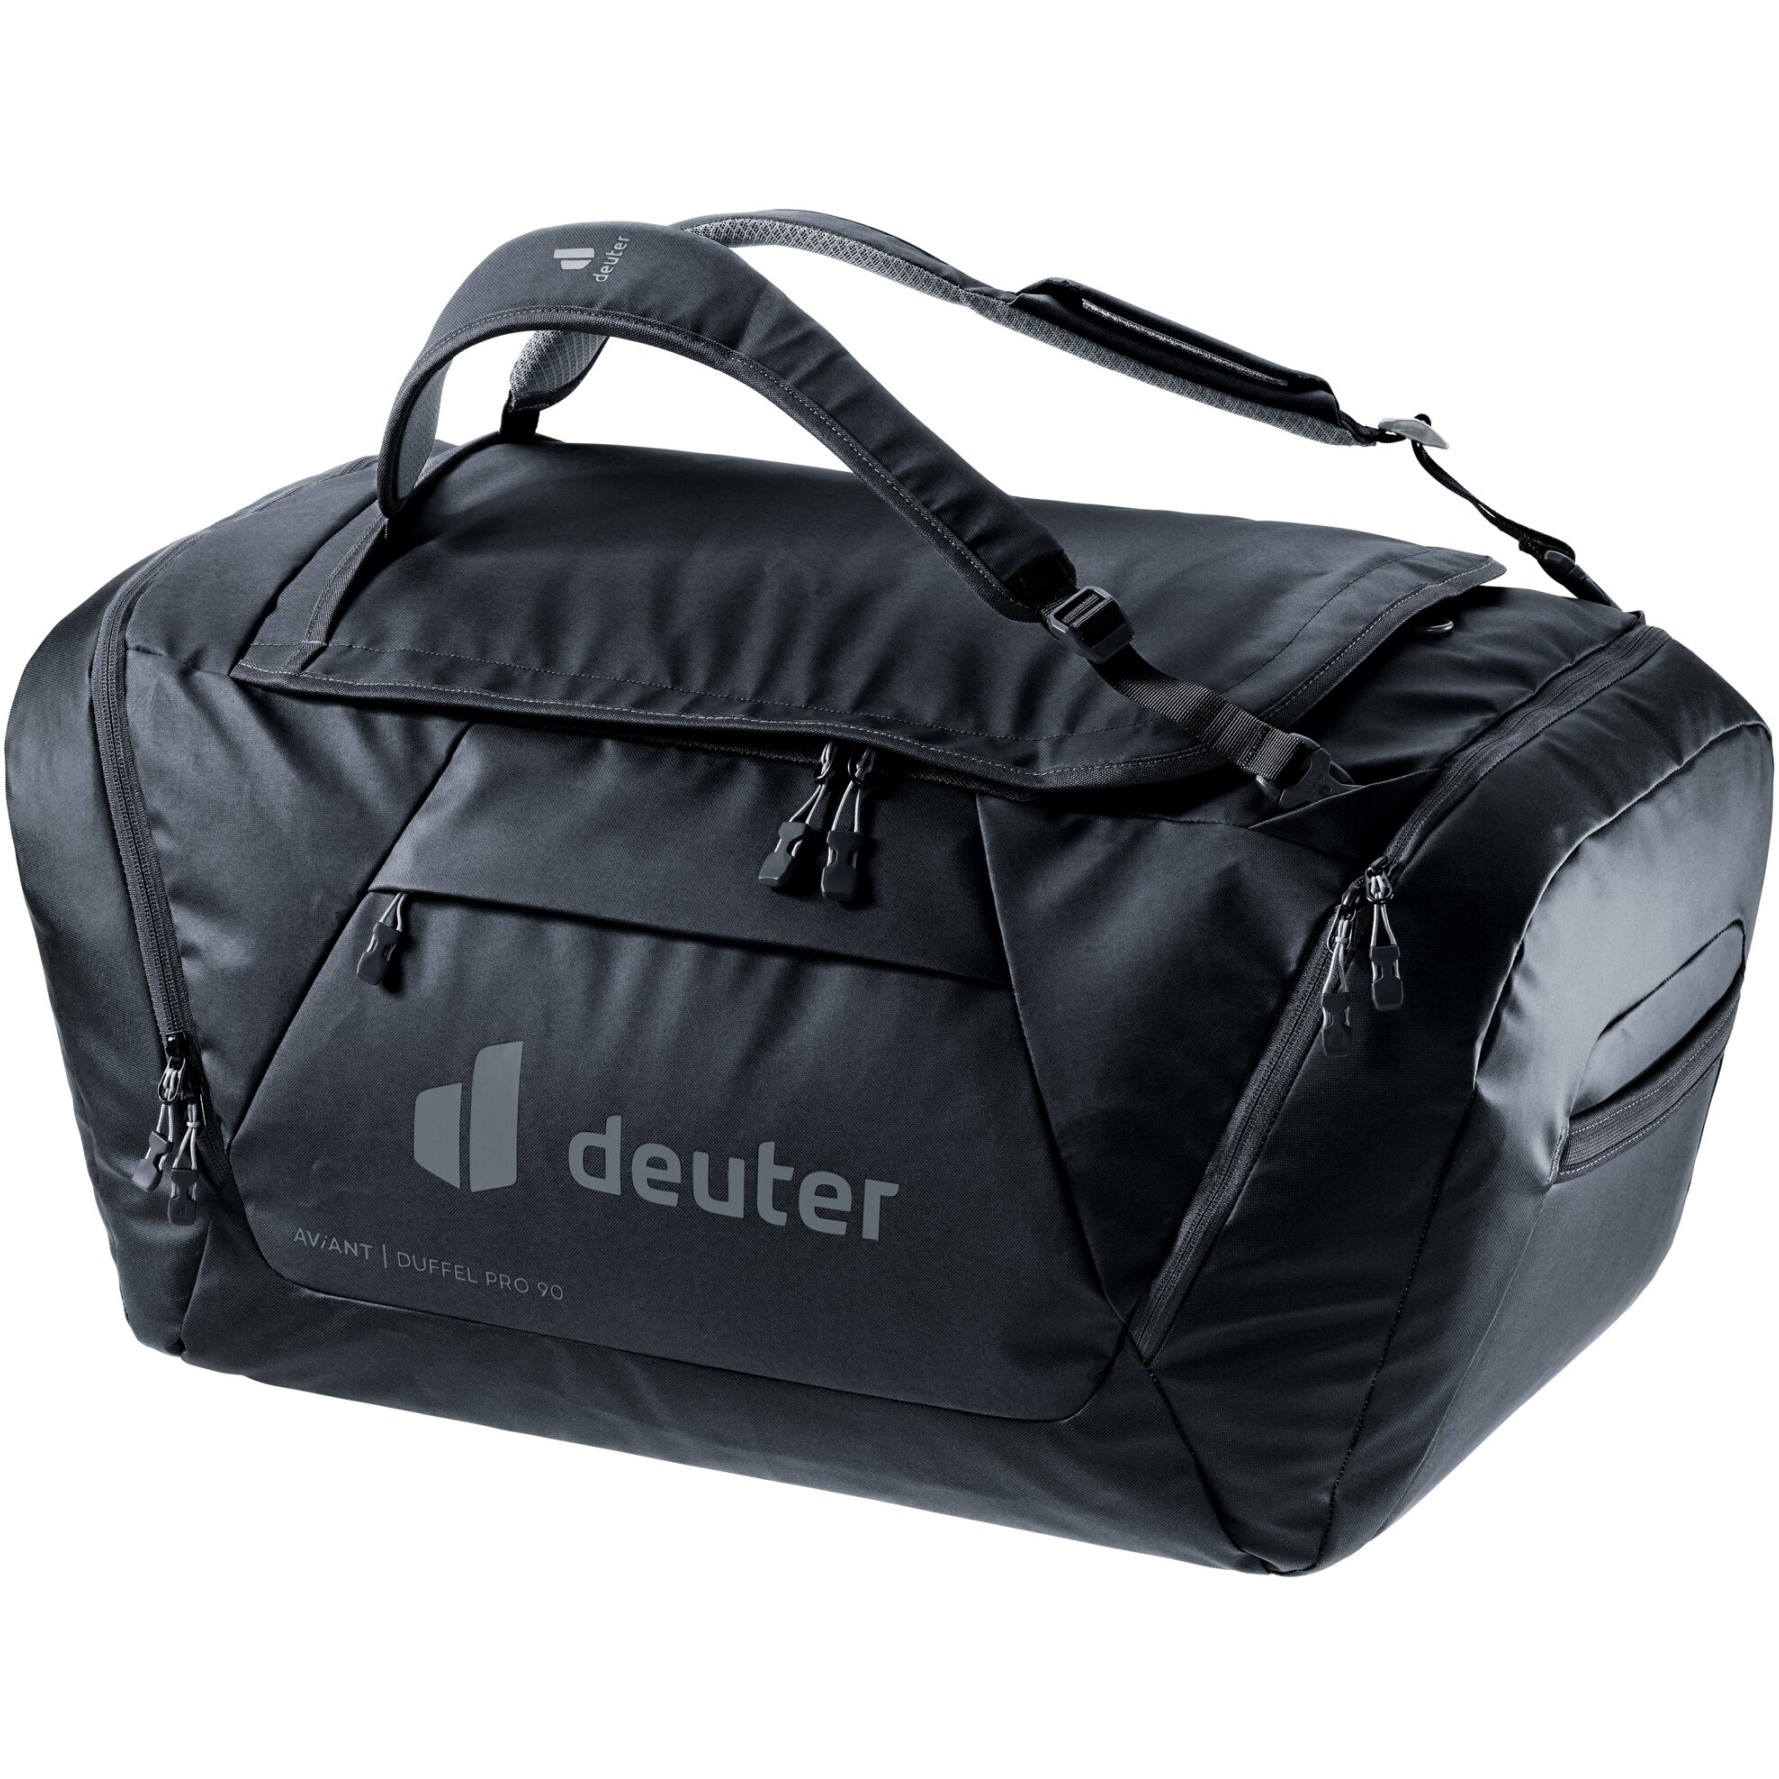 Produktbild von Deuter AViANT Duffel Pro 90 Reisetasche - schwarz